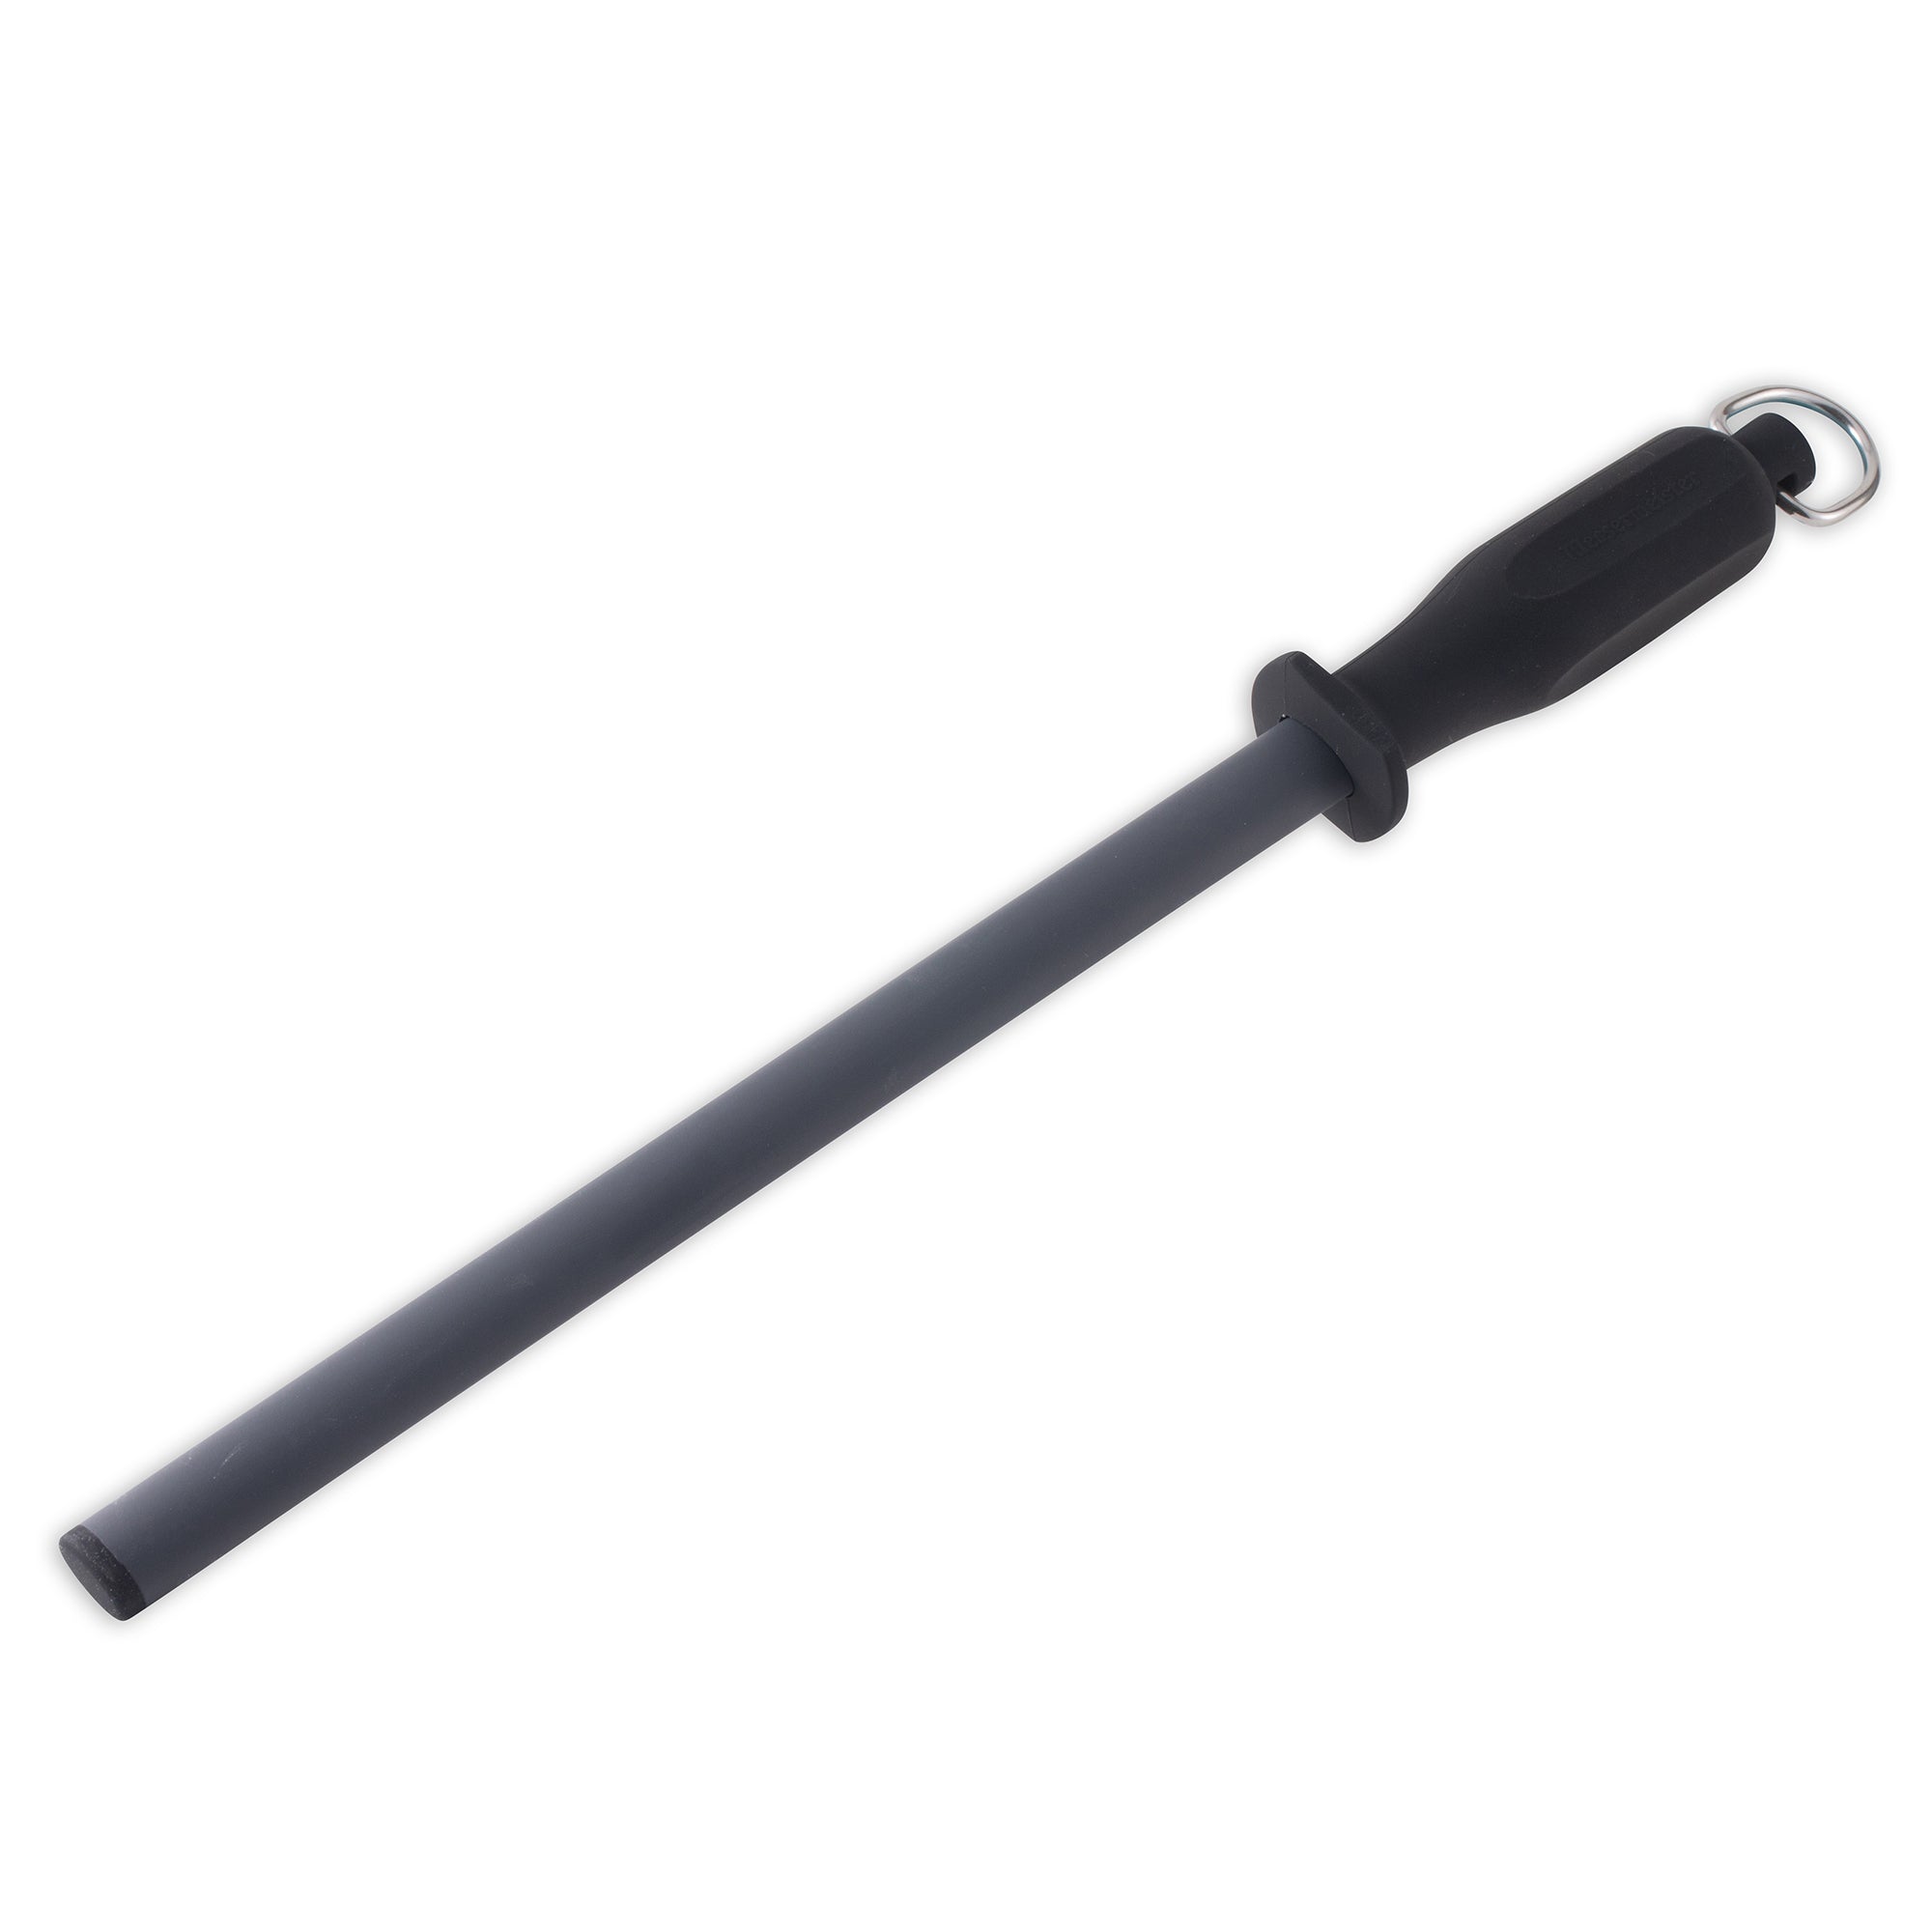 Messermeister Steel Honing Rod: 12 Fine Grit